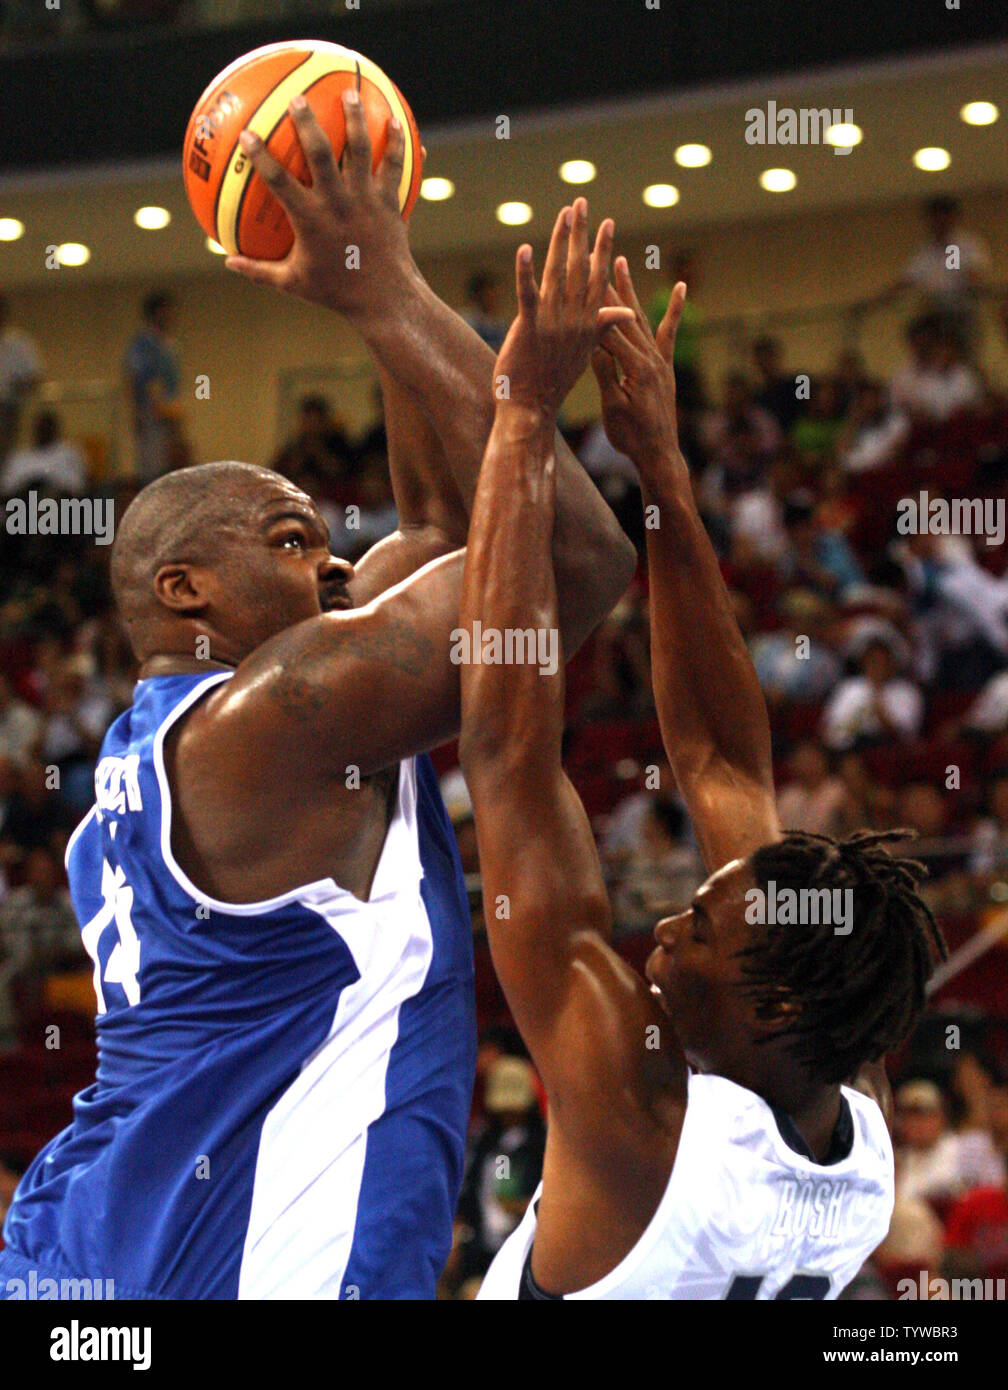 Griechenland Sofoklis Schortsanitis (L) schießt über die USA Chris Bosh  während Basketball Vorrunde der Olympischen Männer Spiel in Peking vom 14.  August 2008. USA gewann 92-69. (UPI Foto/Stephen Rasierer Stockfotografie -  Alamy